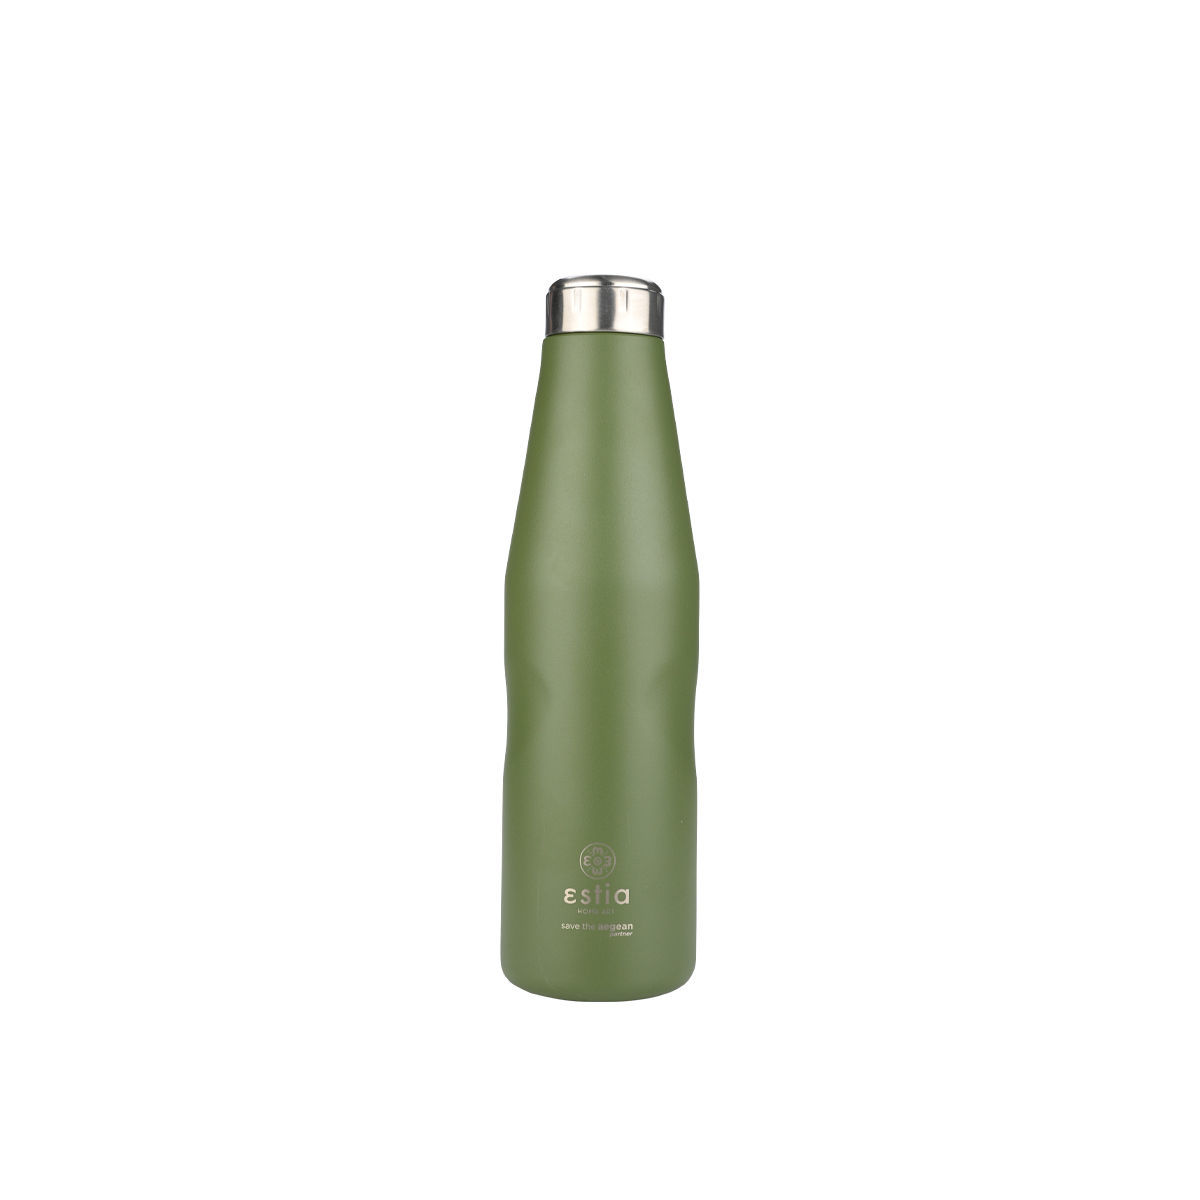 Θερμός-Μπουκάλι Ανοξείδωτο Forest Spirit Flask Save The Aegean Estia 750ml-7,9×7,9×27,8εκ. 01-22372 (Υλικό: Ανοξείδωτο, Χρώμα: Πράσινο ) – estia – 01-22372